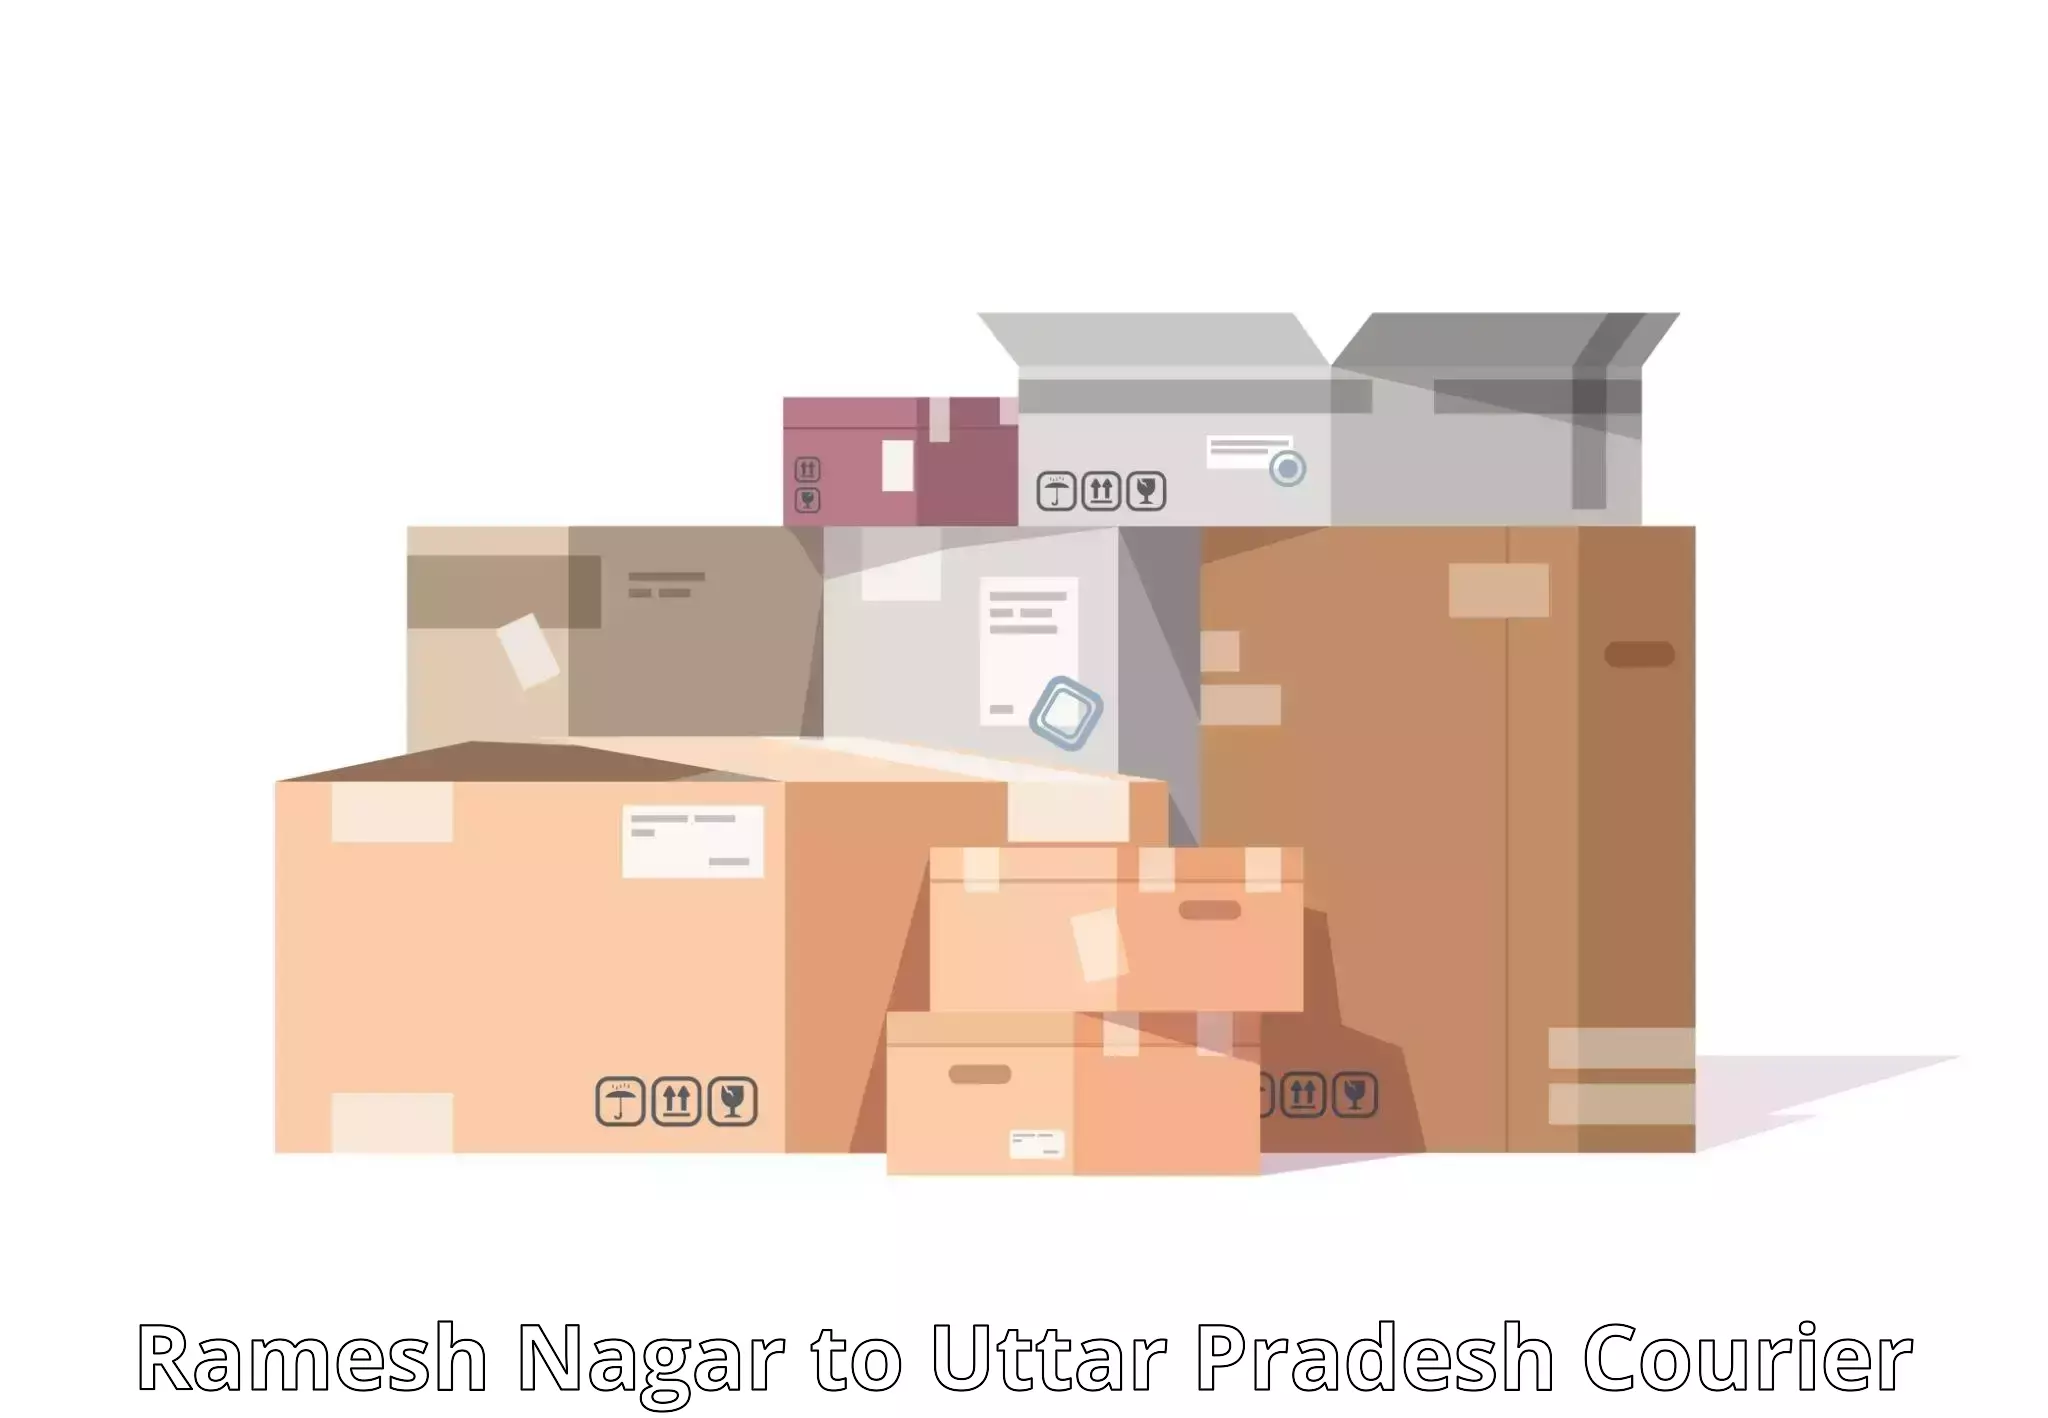 Premium courier services in Ramesh Nagar to Meerut